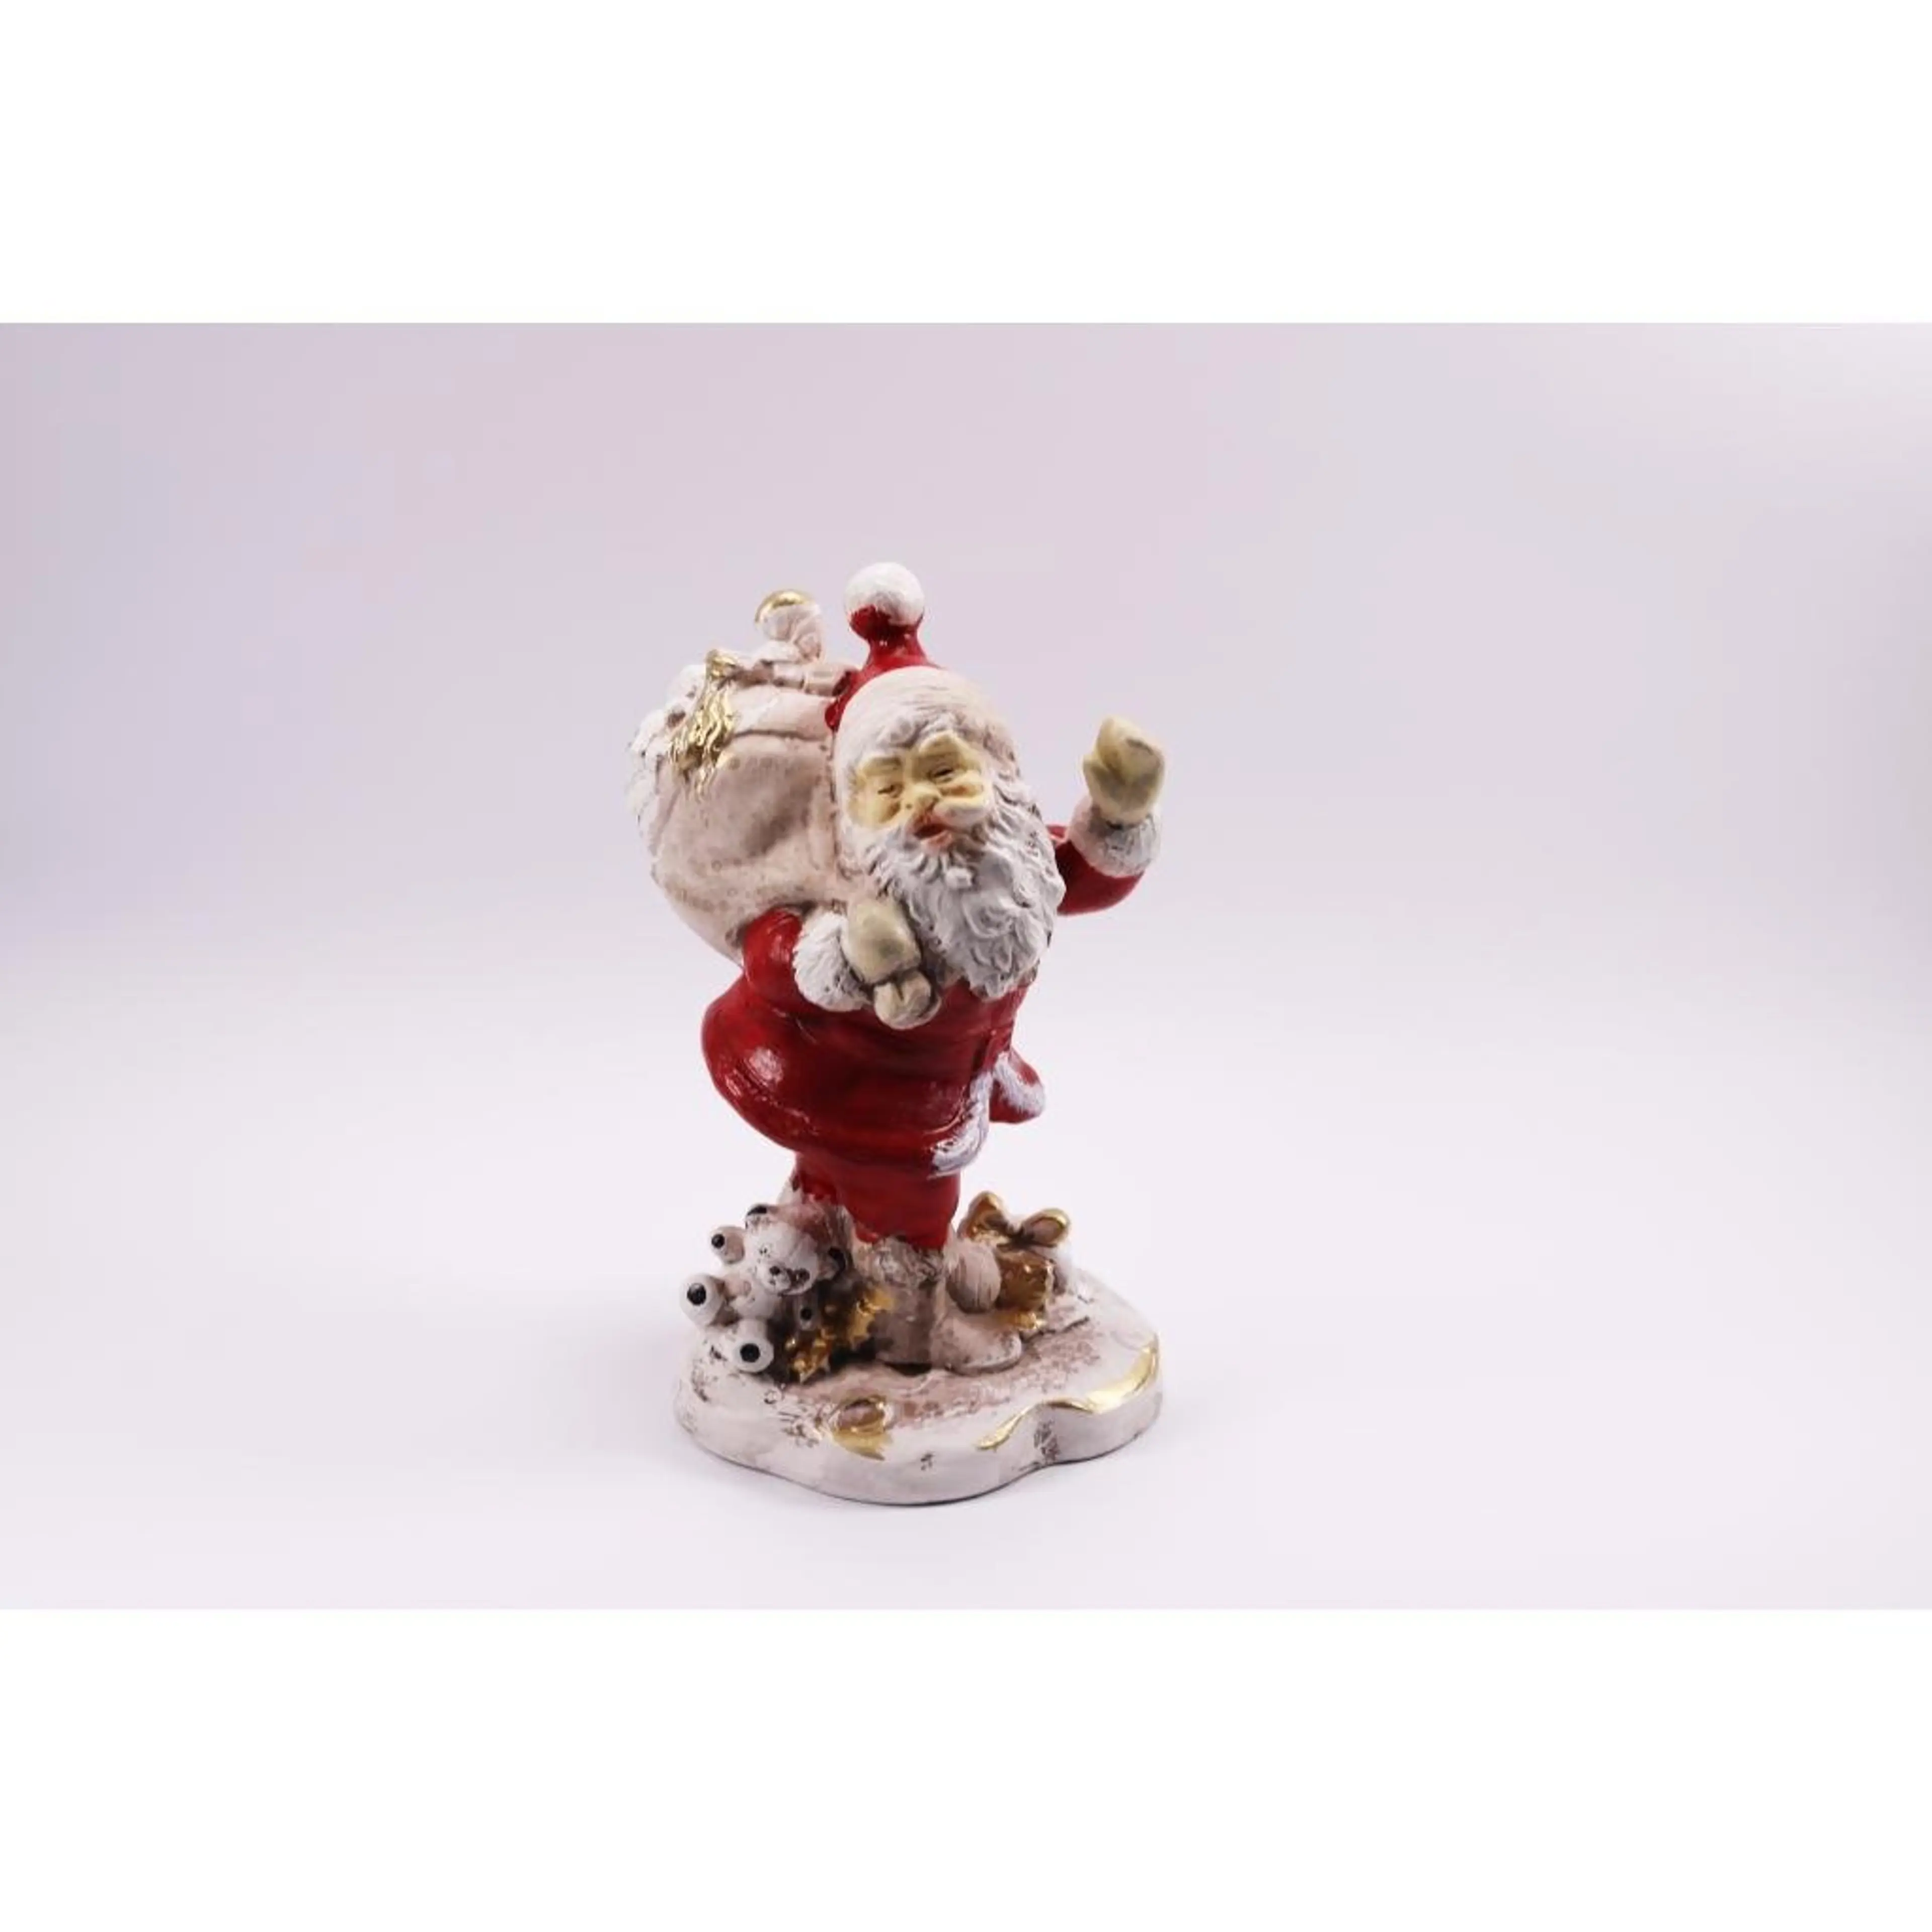 Vintage Ceramic Santa Claus